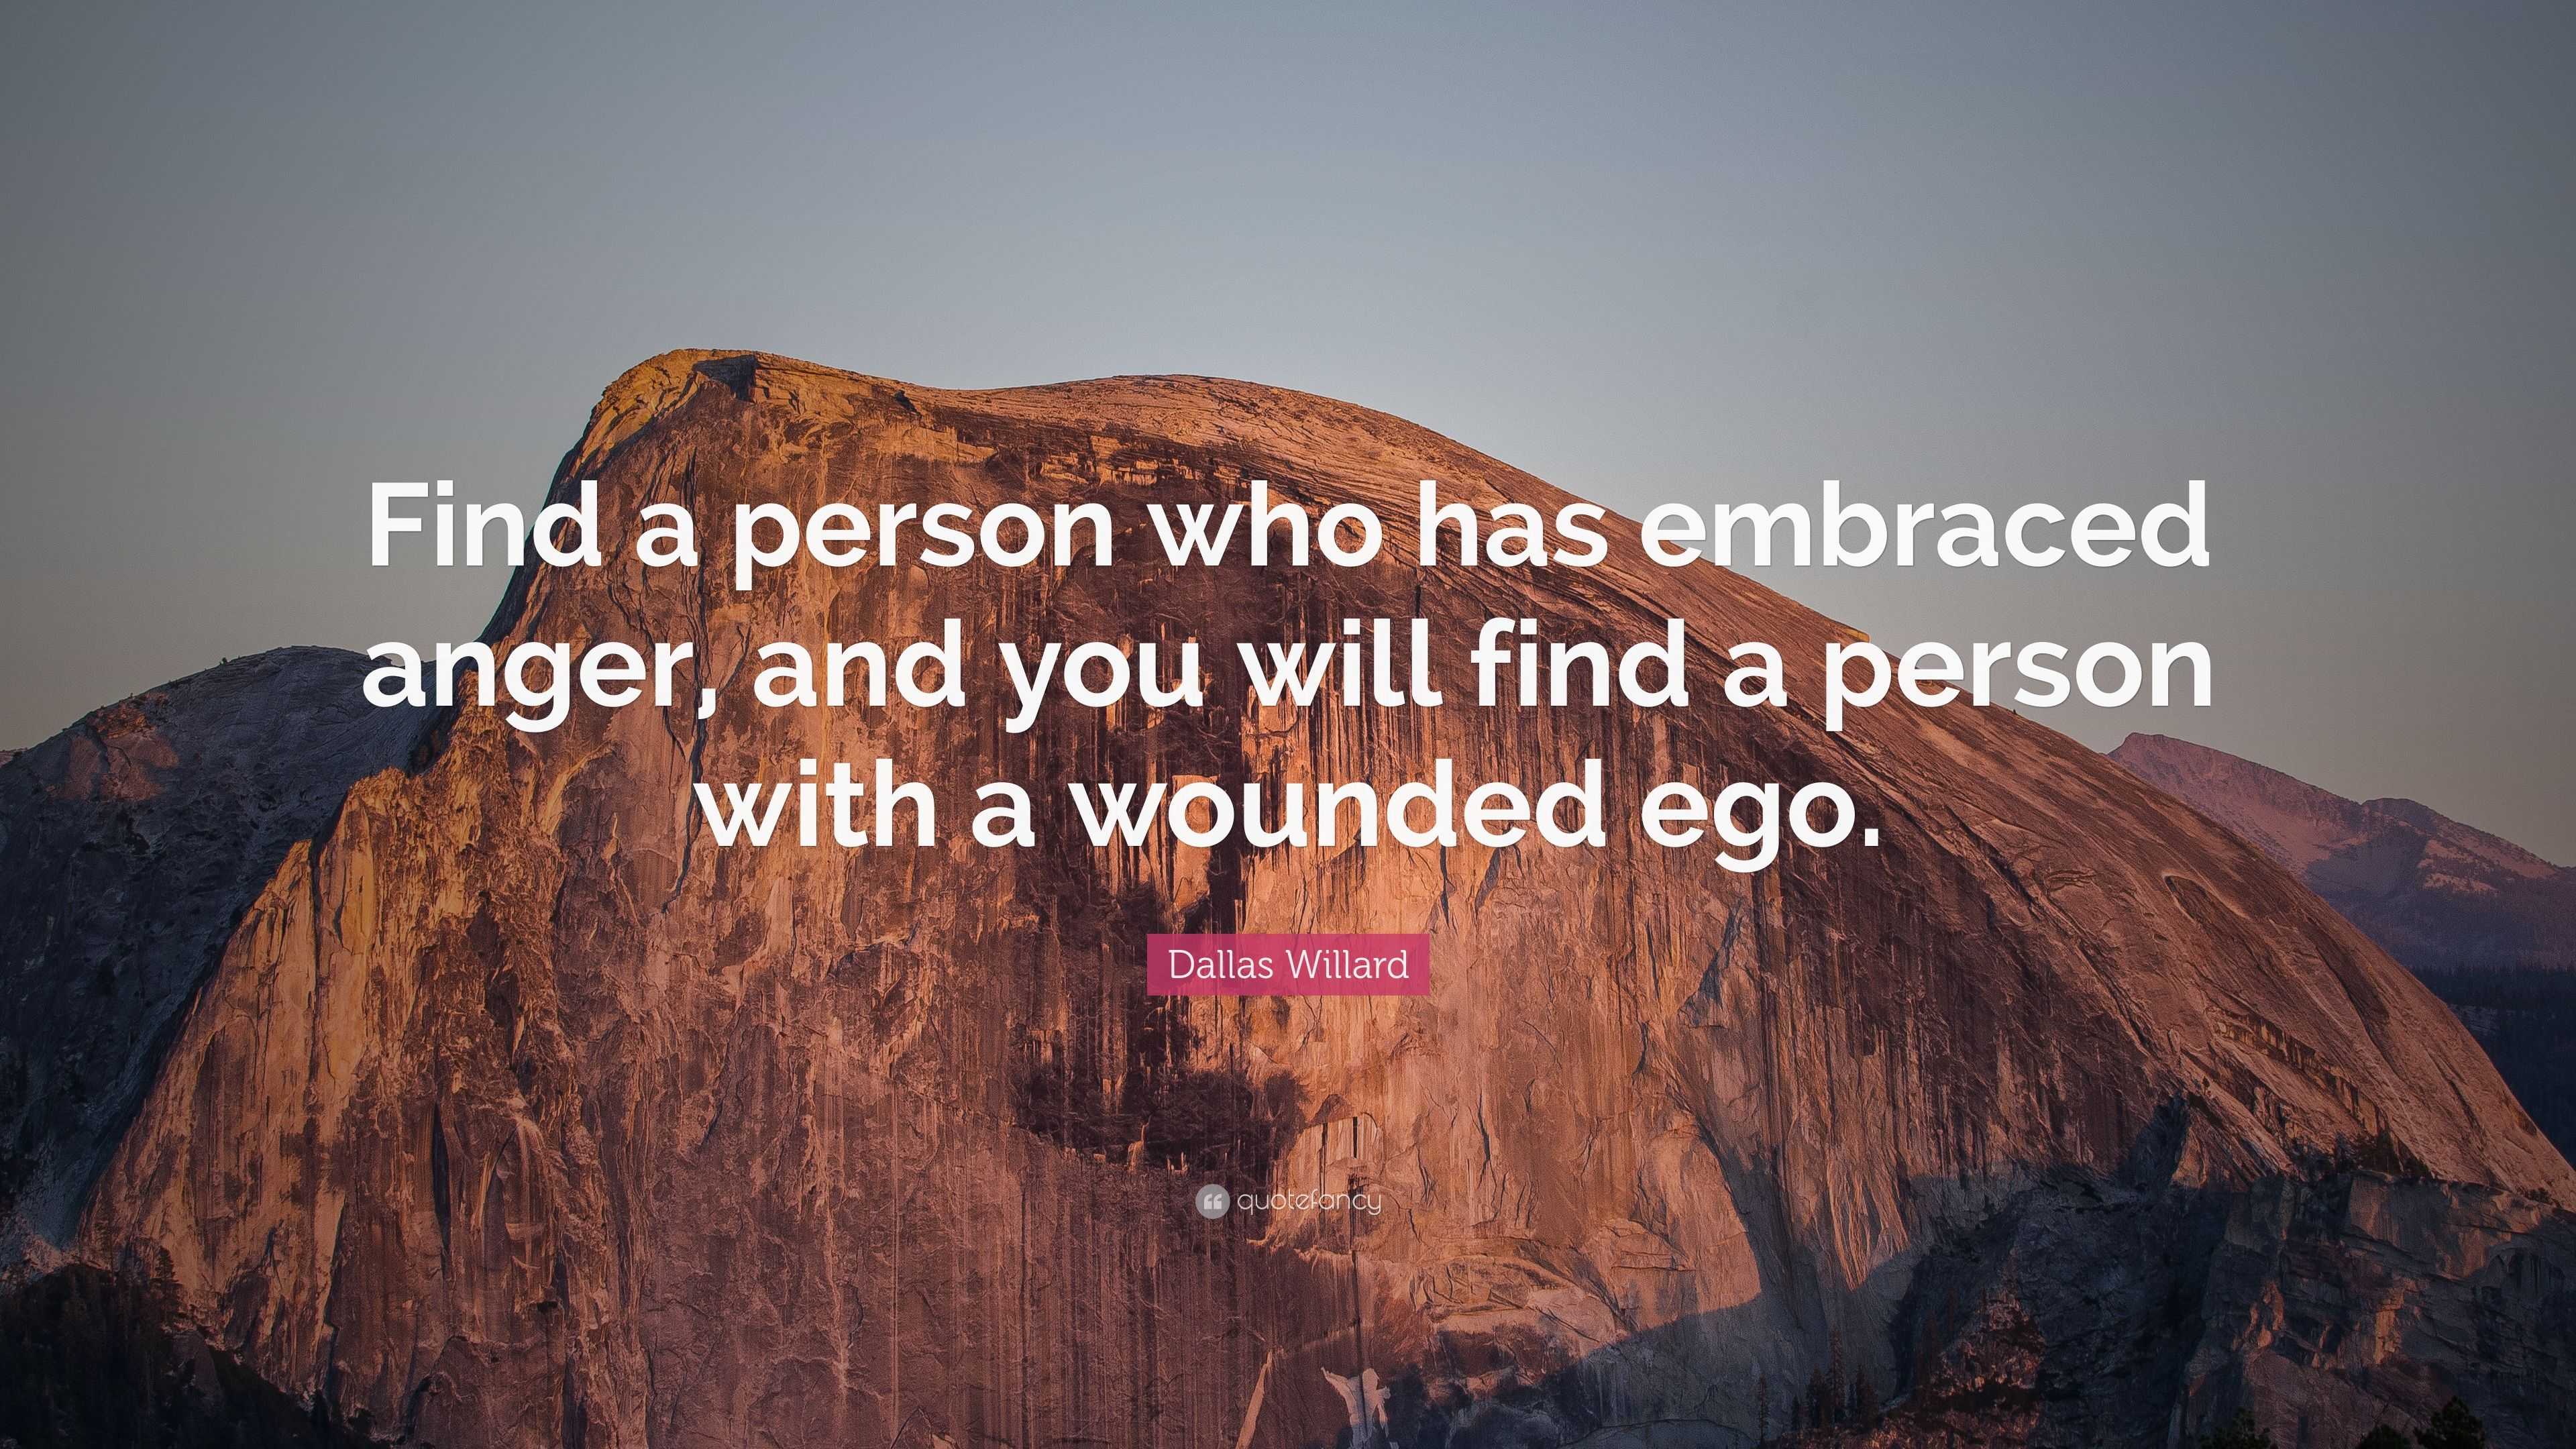 Dallas Willard Quote “Find a person who has embraced